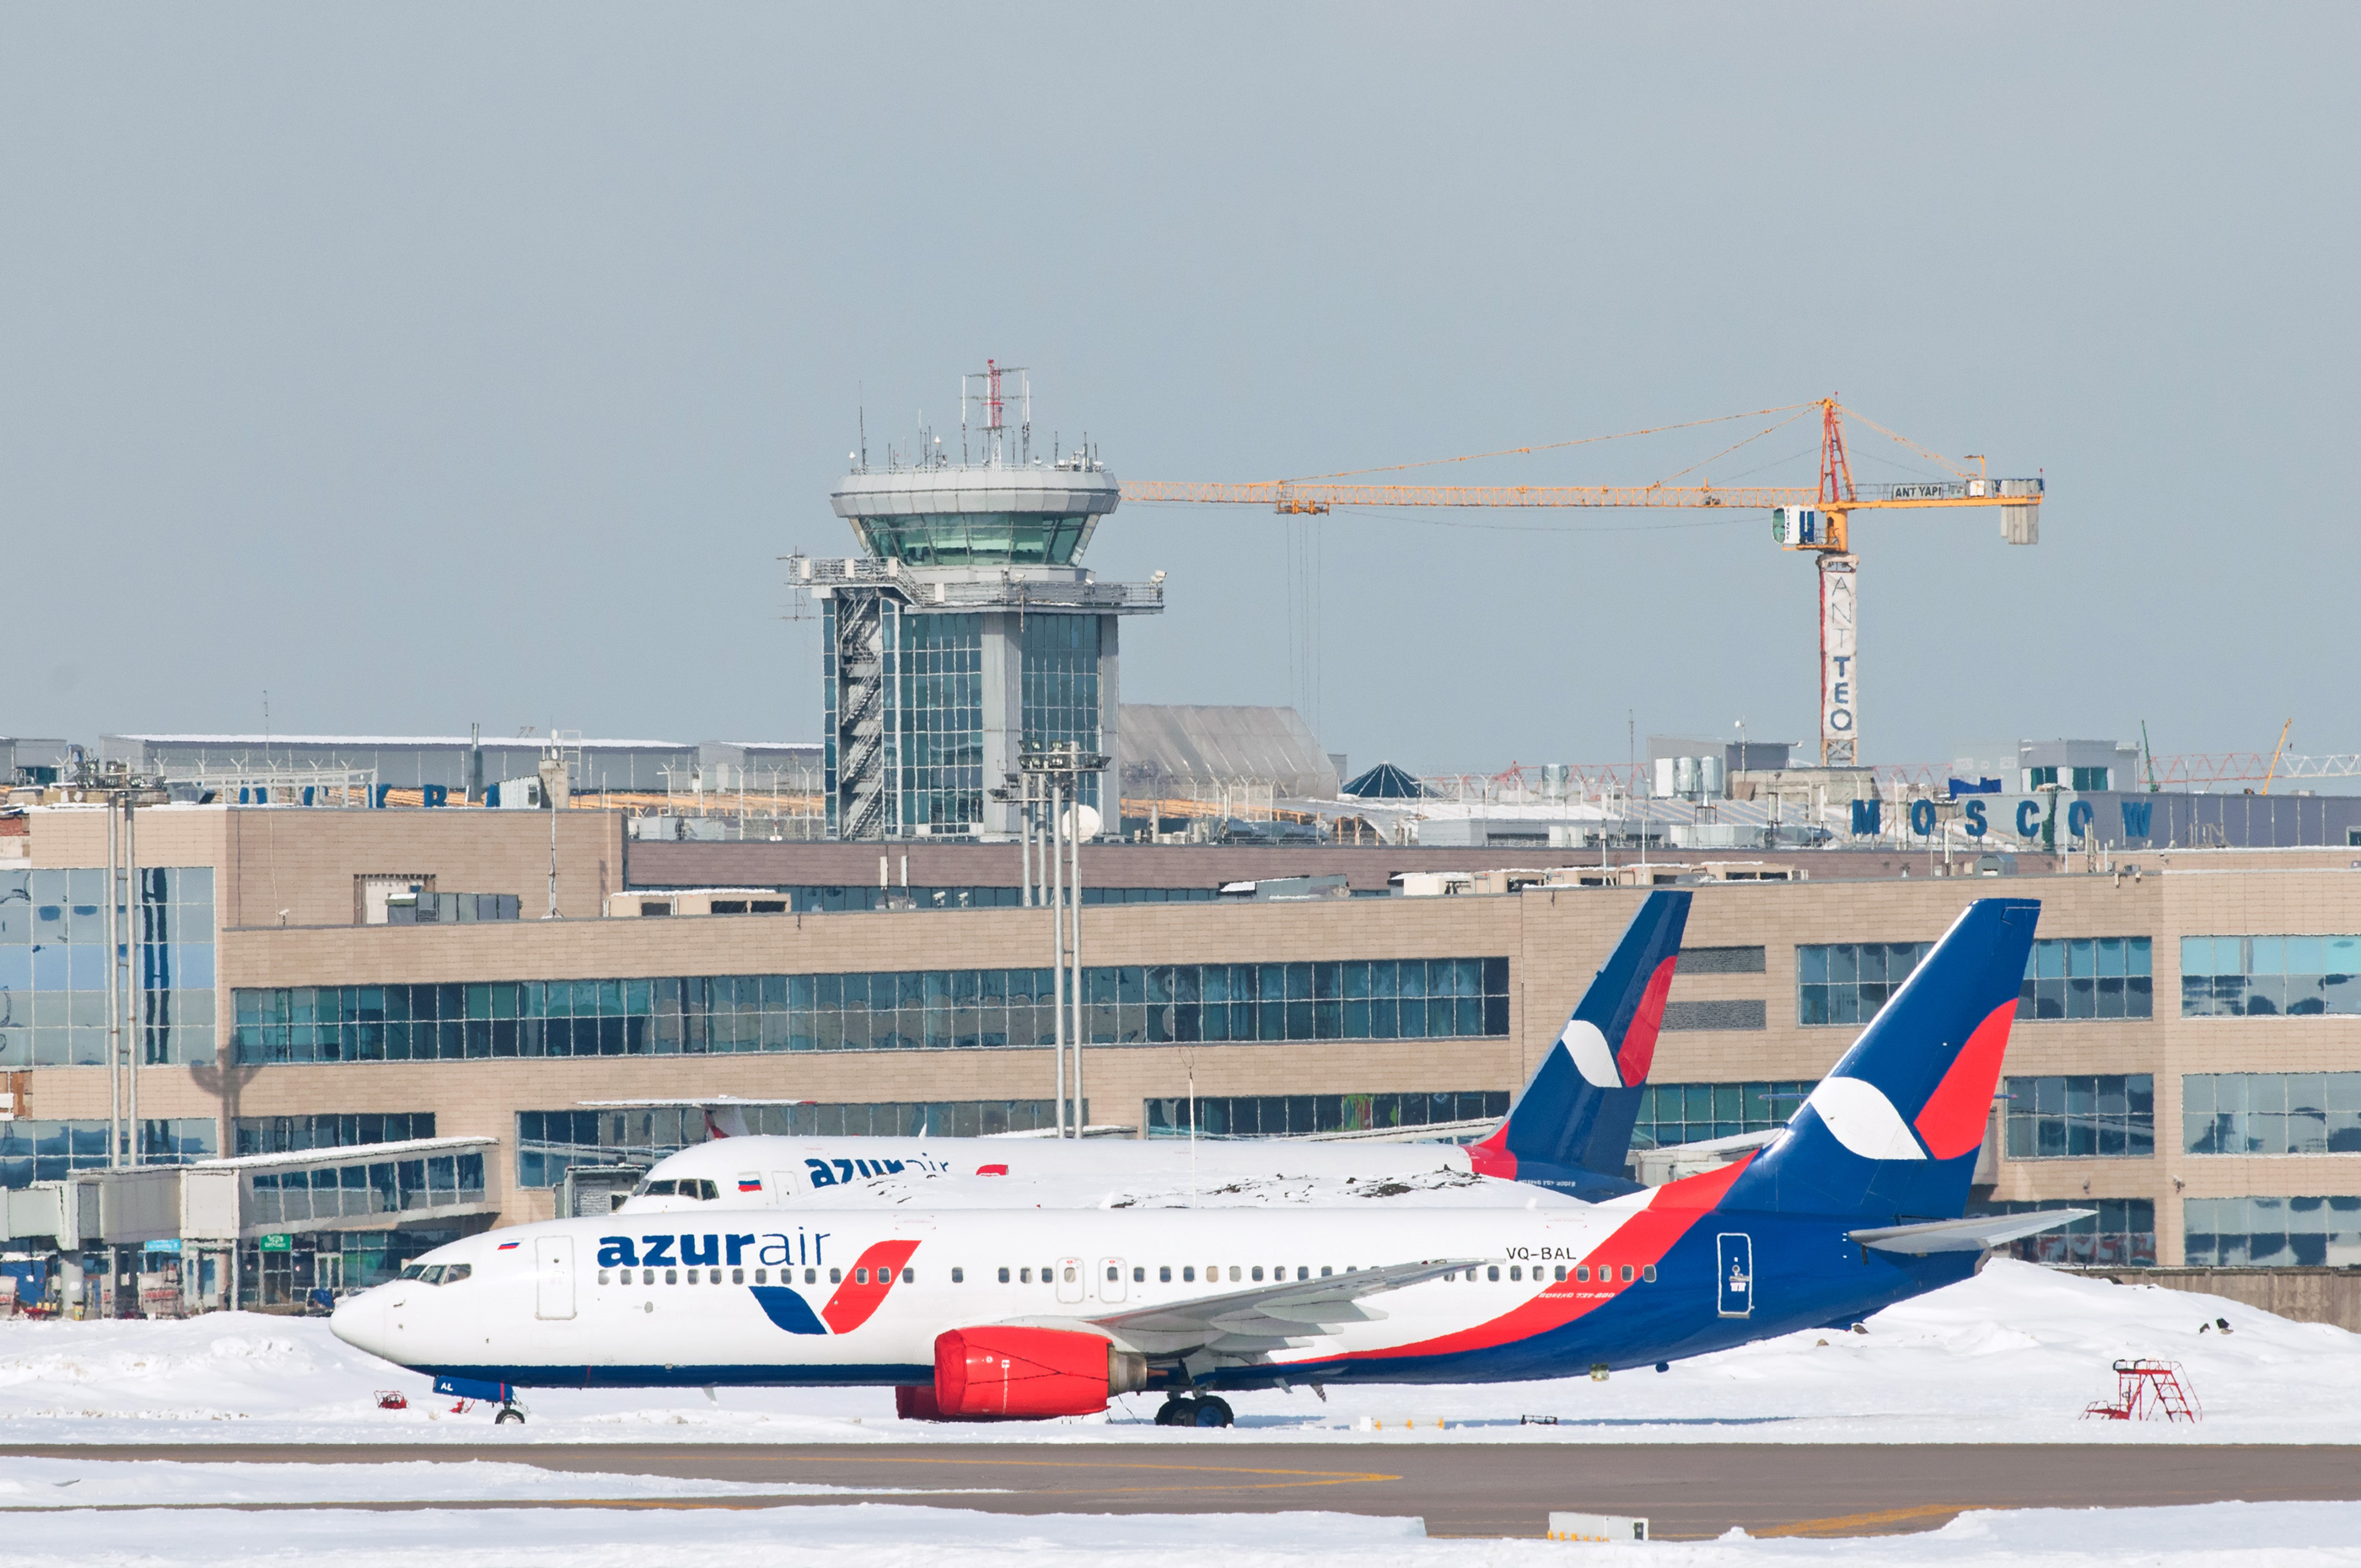 azurair, Новости, 19 Марта 2018, Авиакомпания AZUR air подала заявку на перевод своих самолётов в Государственный реестр воздушных судов Российской Федерации